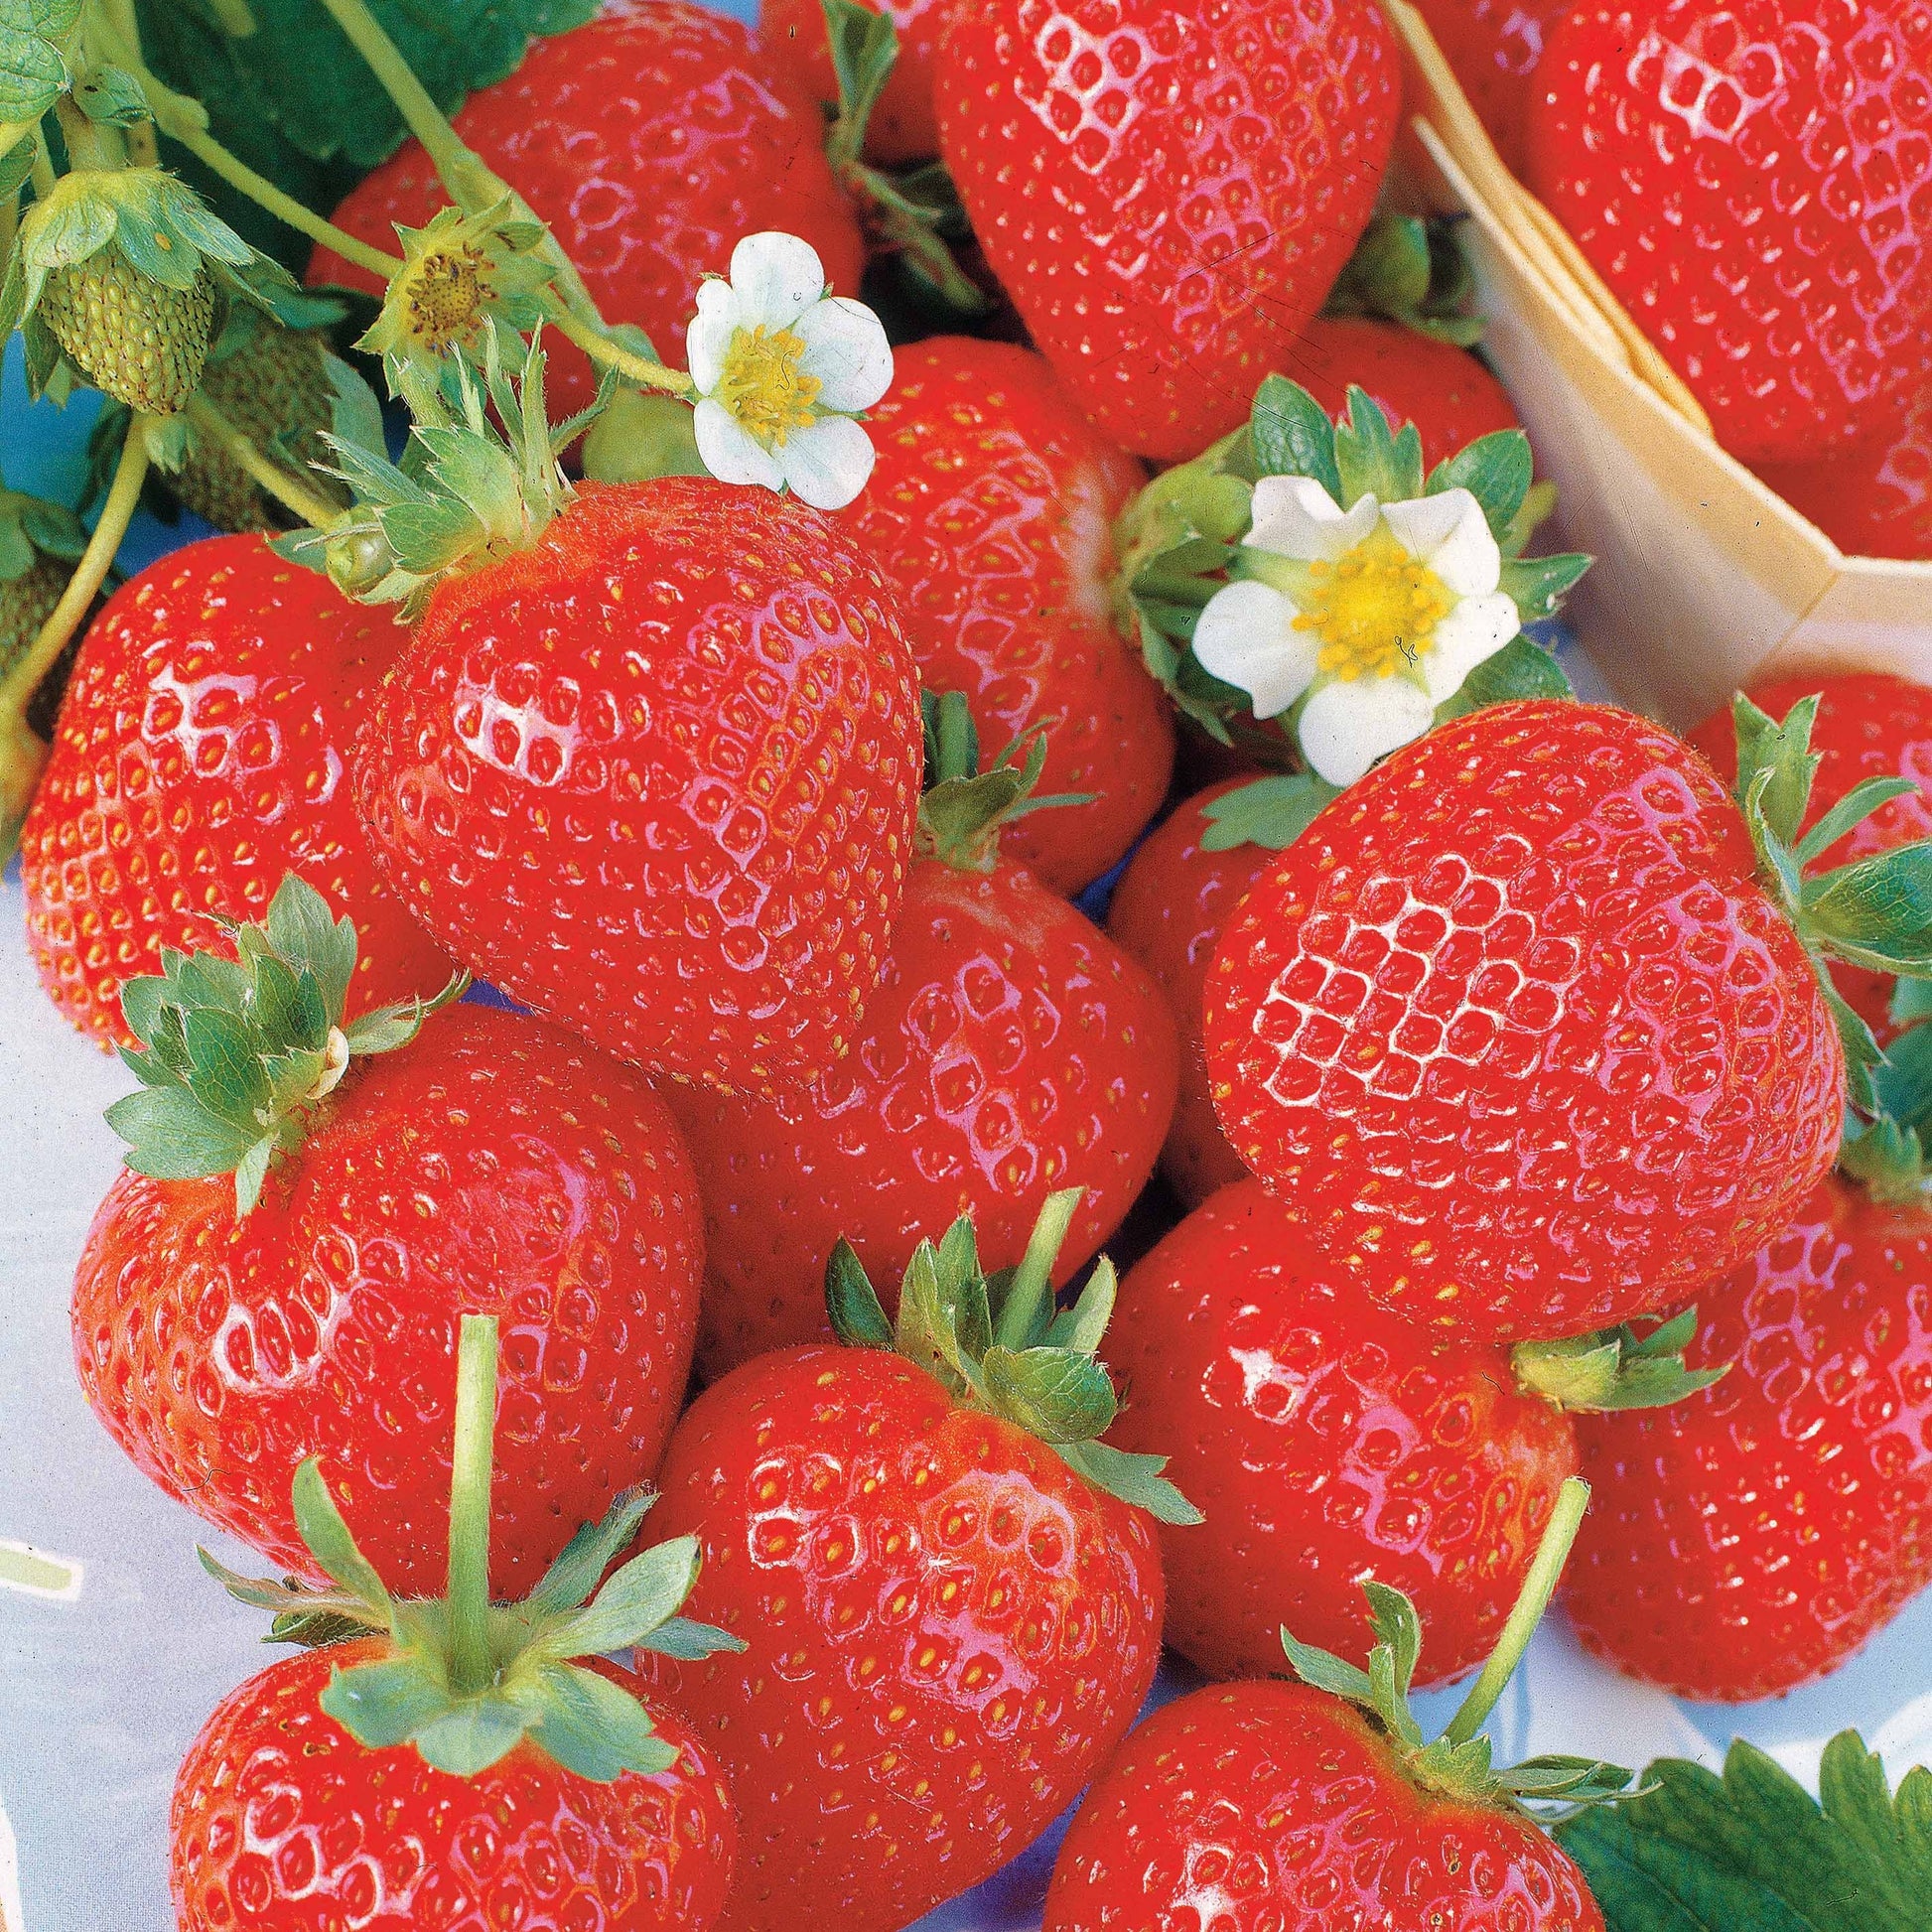 Sammlung 6 Monate Erdbeeren: Savoureuse de Willemse, Mara des Bois, Gariguette. (x60) - Fragaria la savoureuse de willemse cov ma48, mara - Erdbeeren